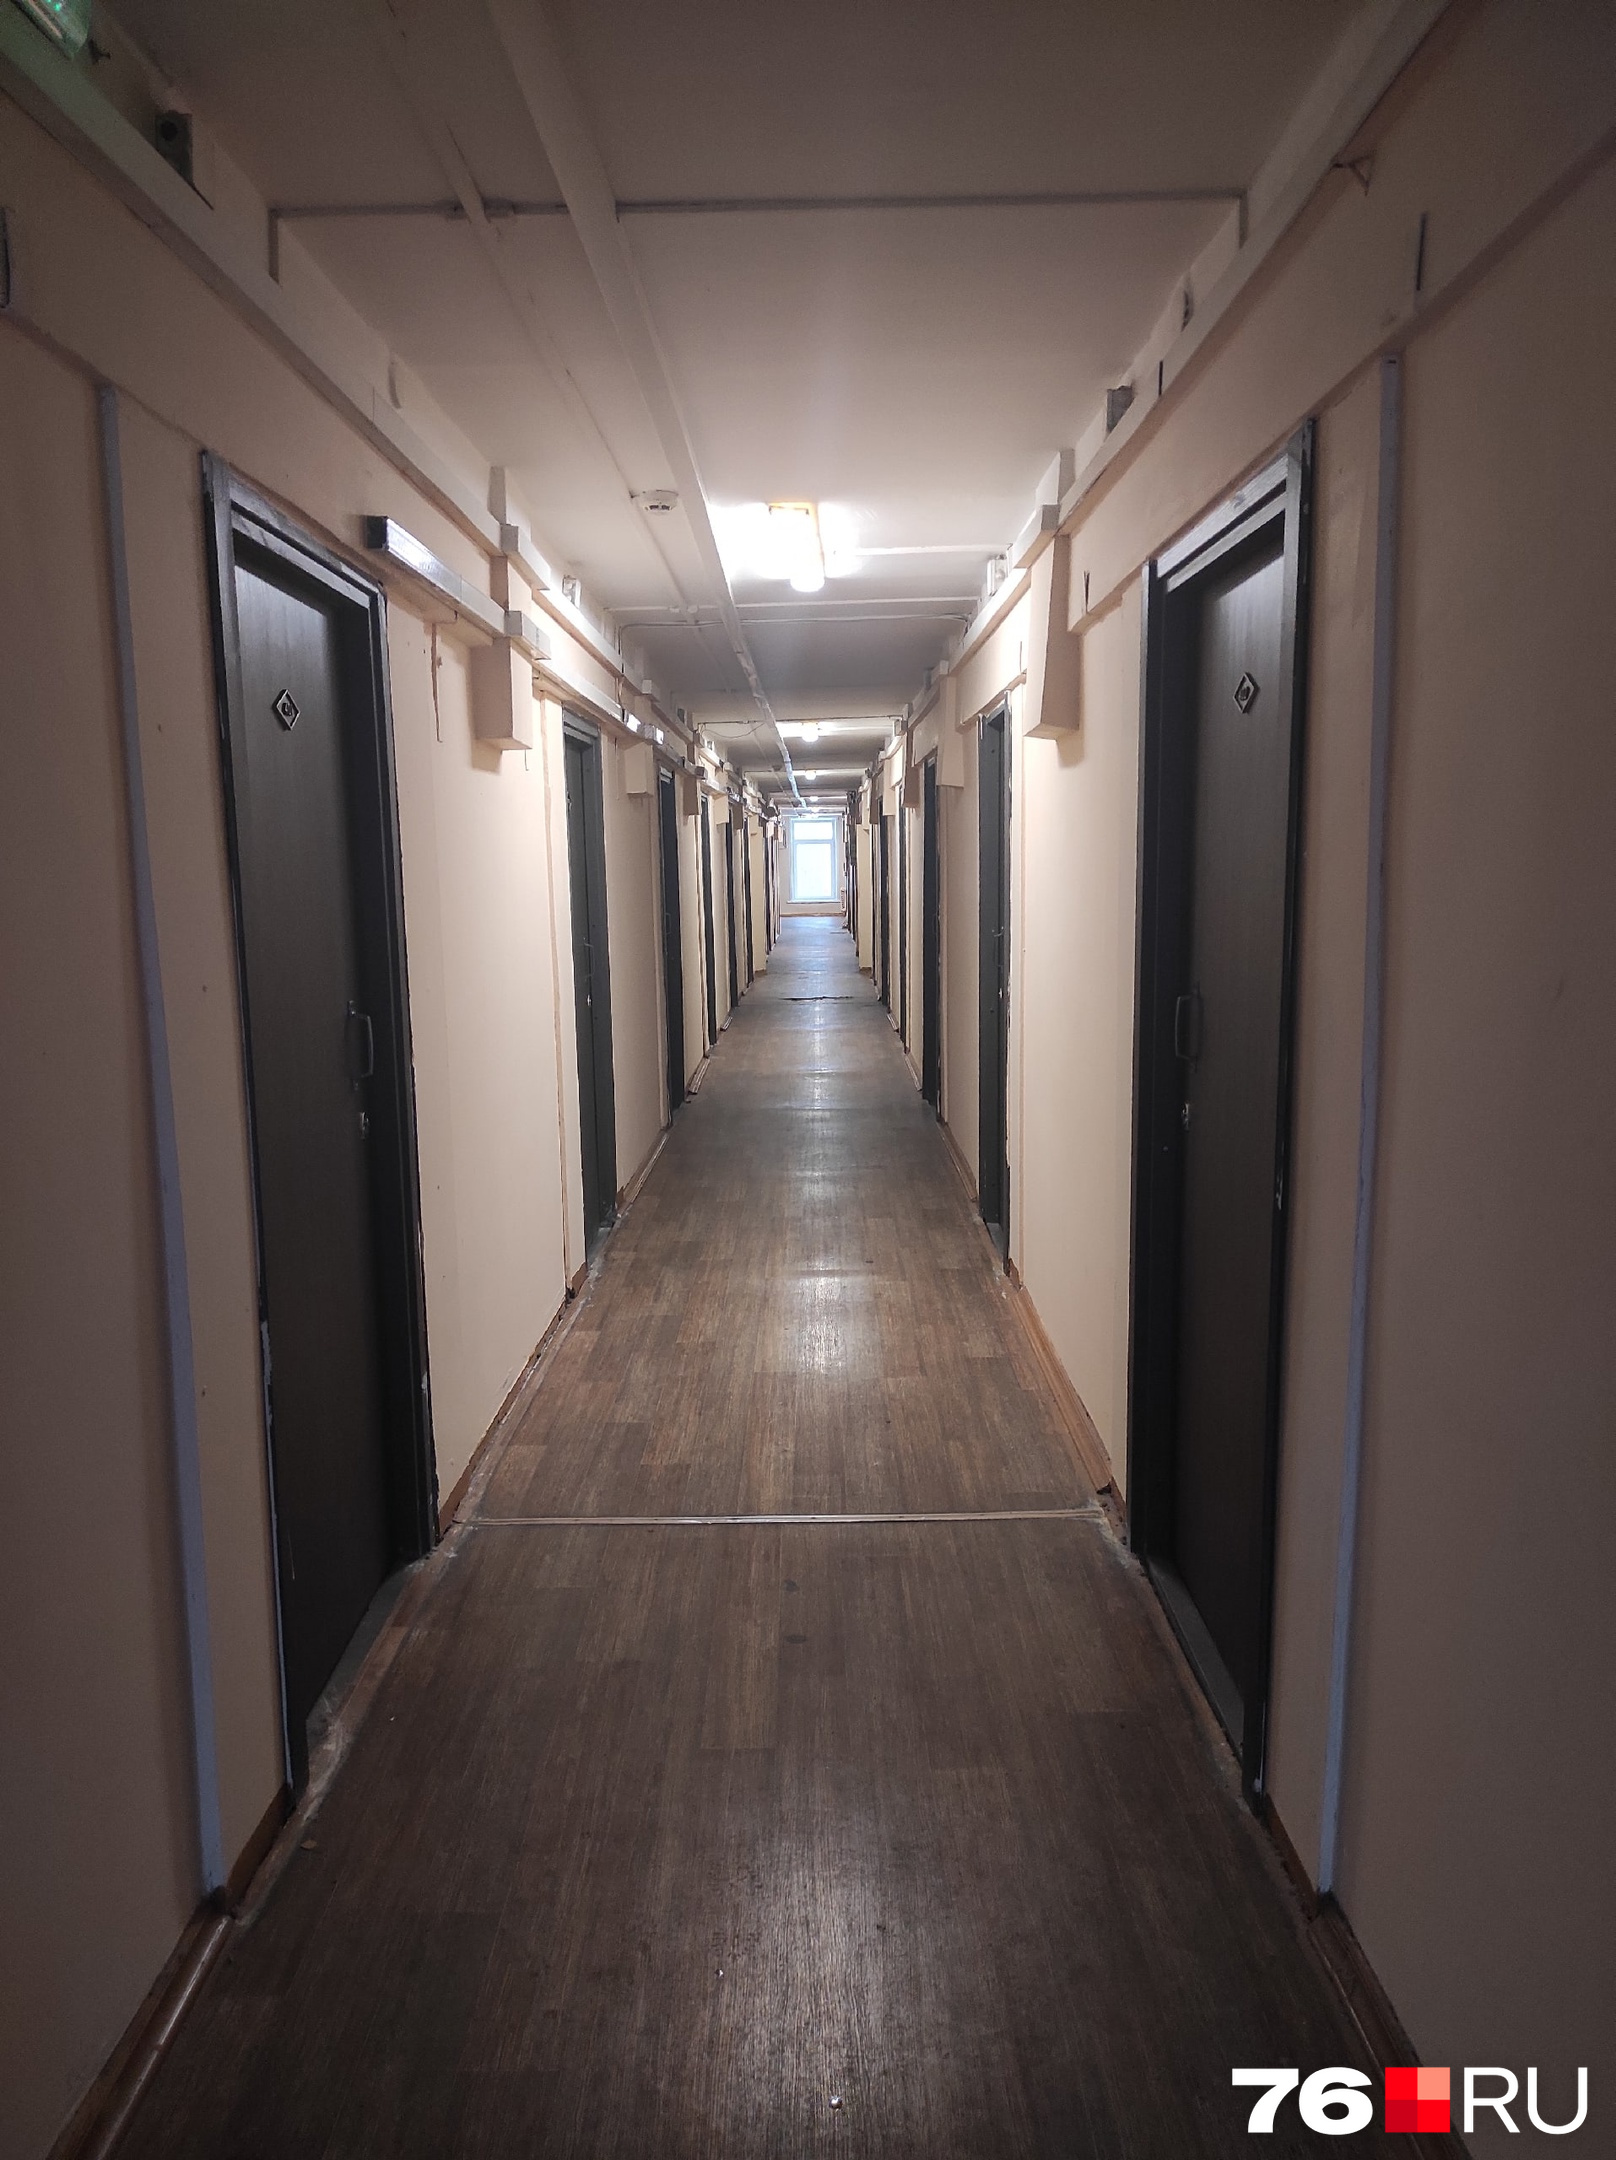 Раньше коридоры были выкрашены в больничный зеленый, однако в 2021 году в коридоре одного из этажей провели ремонт